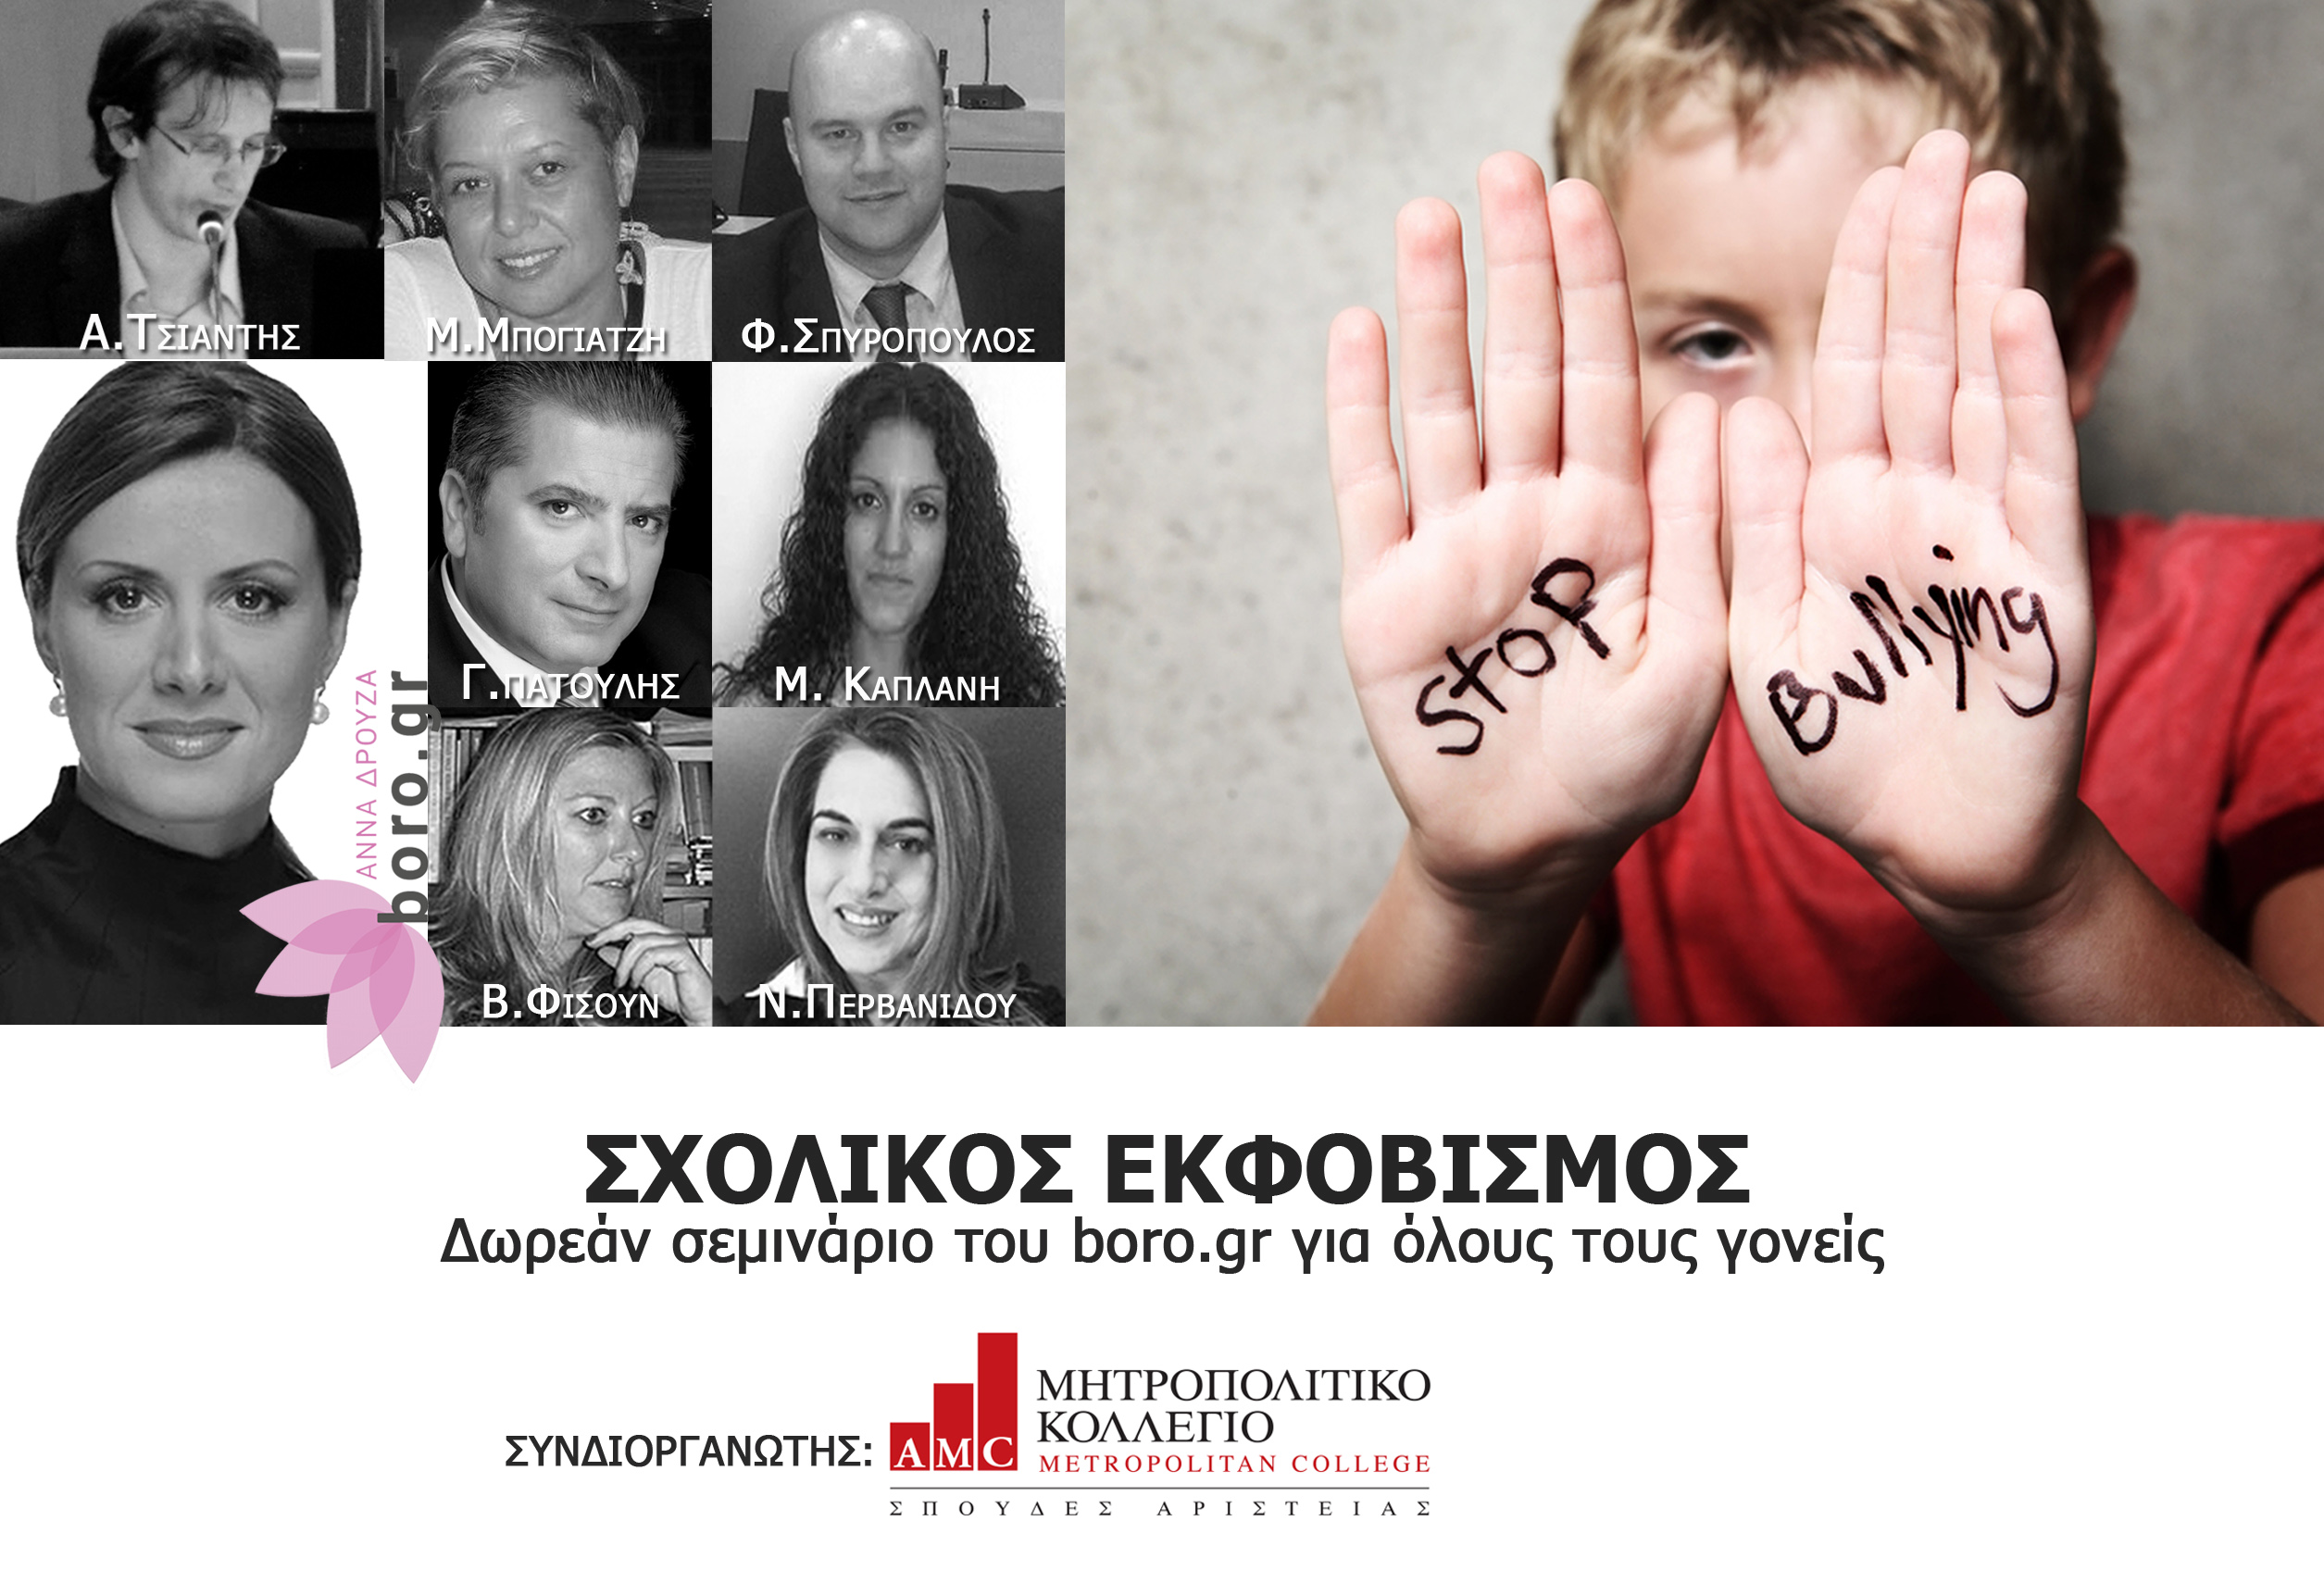 Ημερίδα για τον Σχολικό Εκφοβισμό (Bullying) από το boro.gr και το Μητροπολιτικό Κολλέγιο